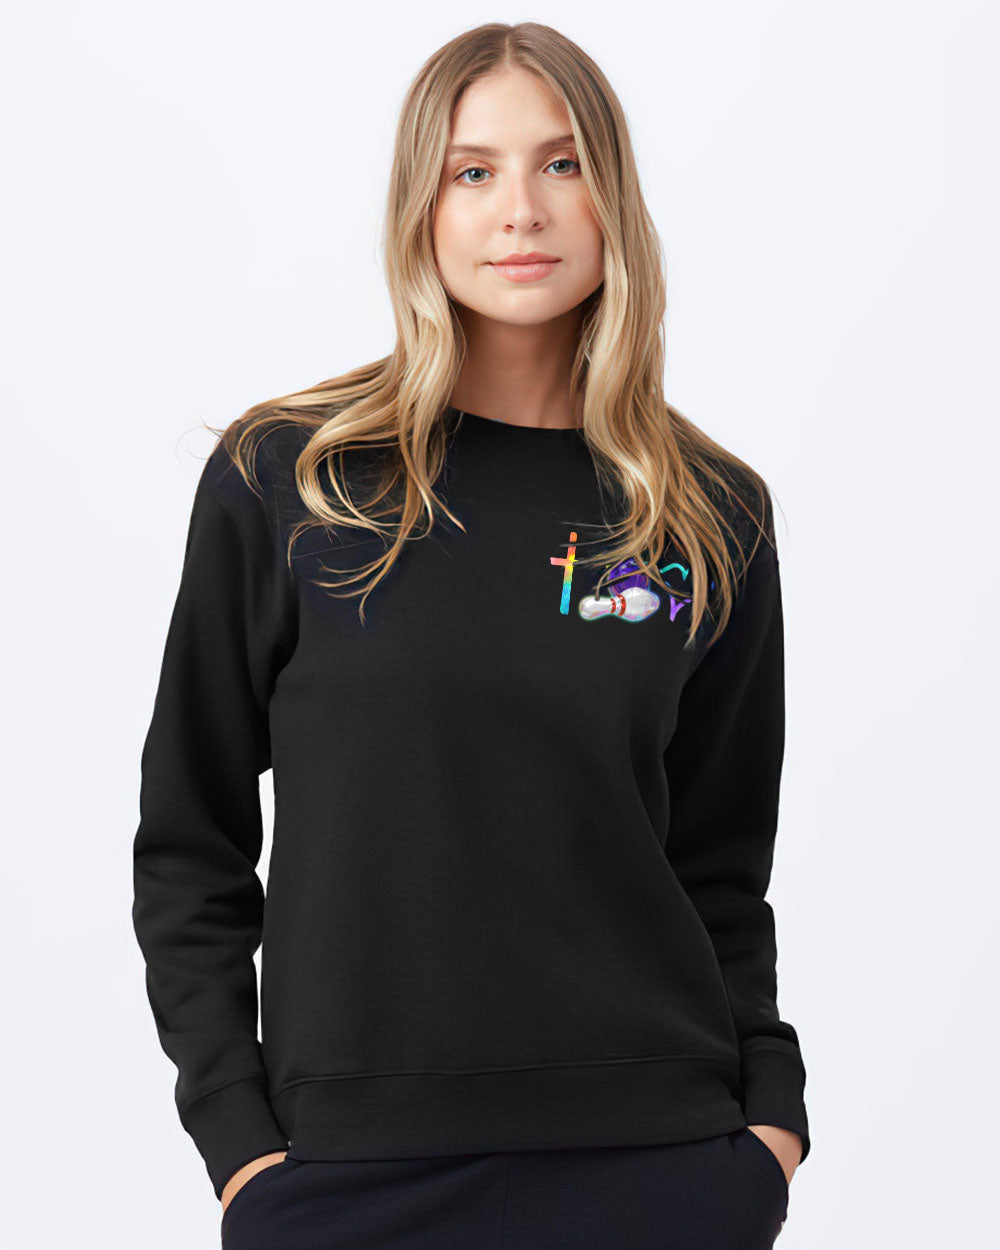 Bowling Cross Colorful Women's Christian Sweatshirt